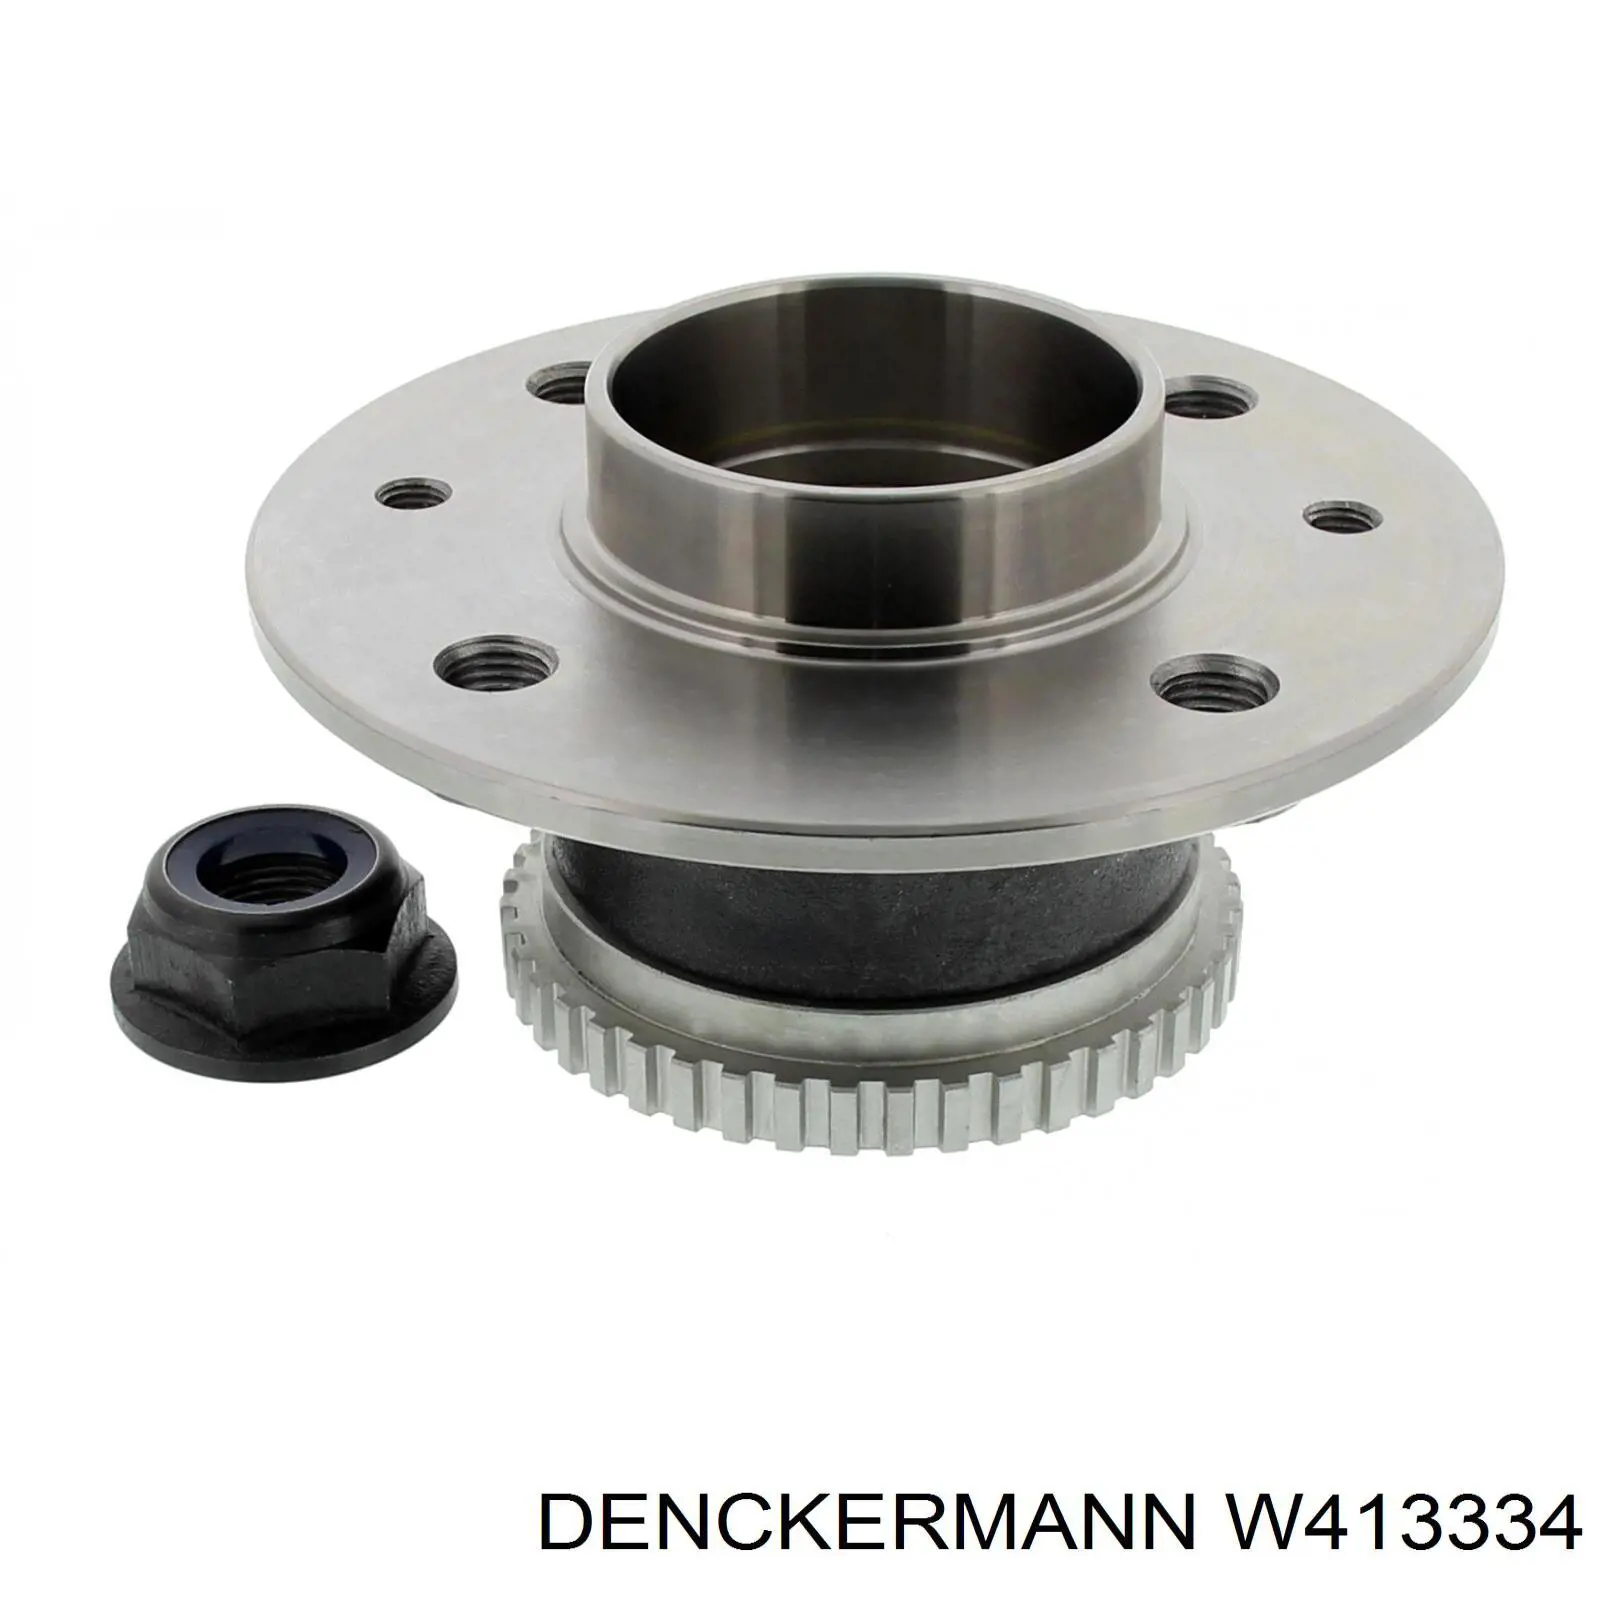 W413334 Denckermann cubo de rueda trasero